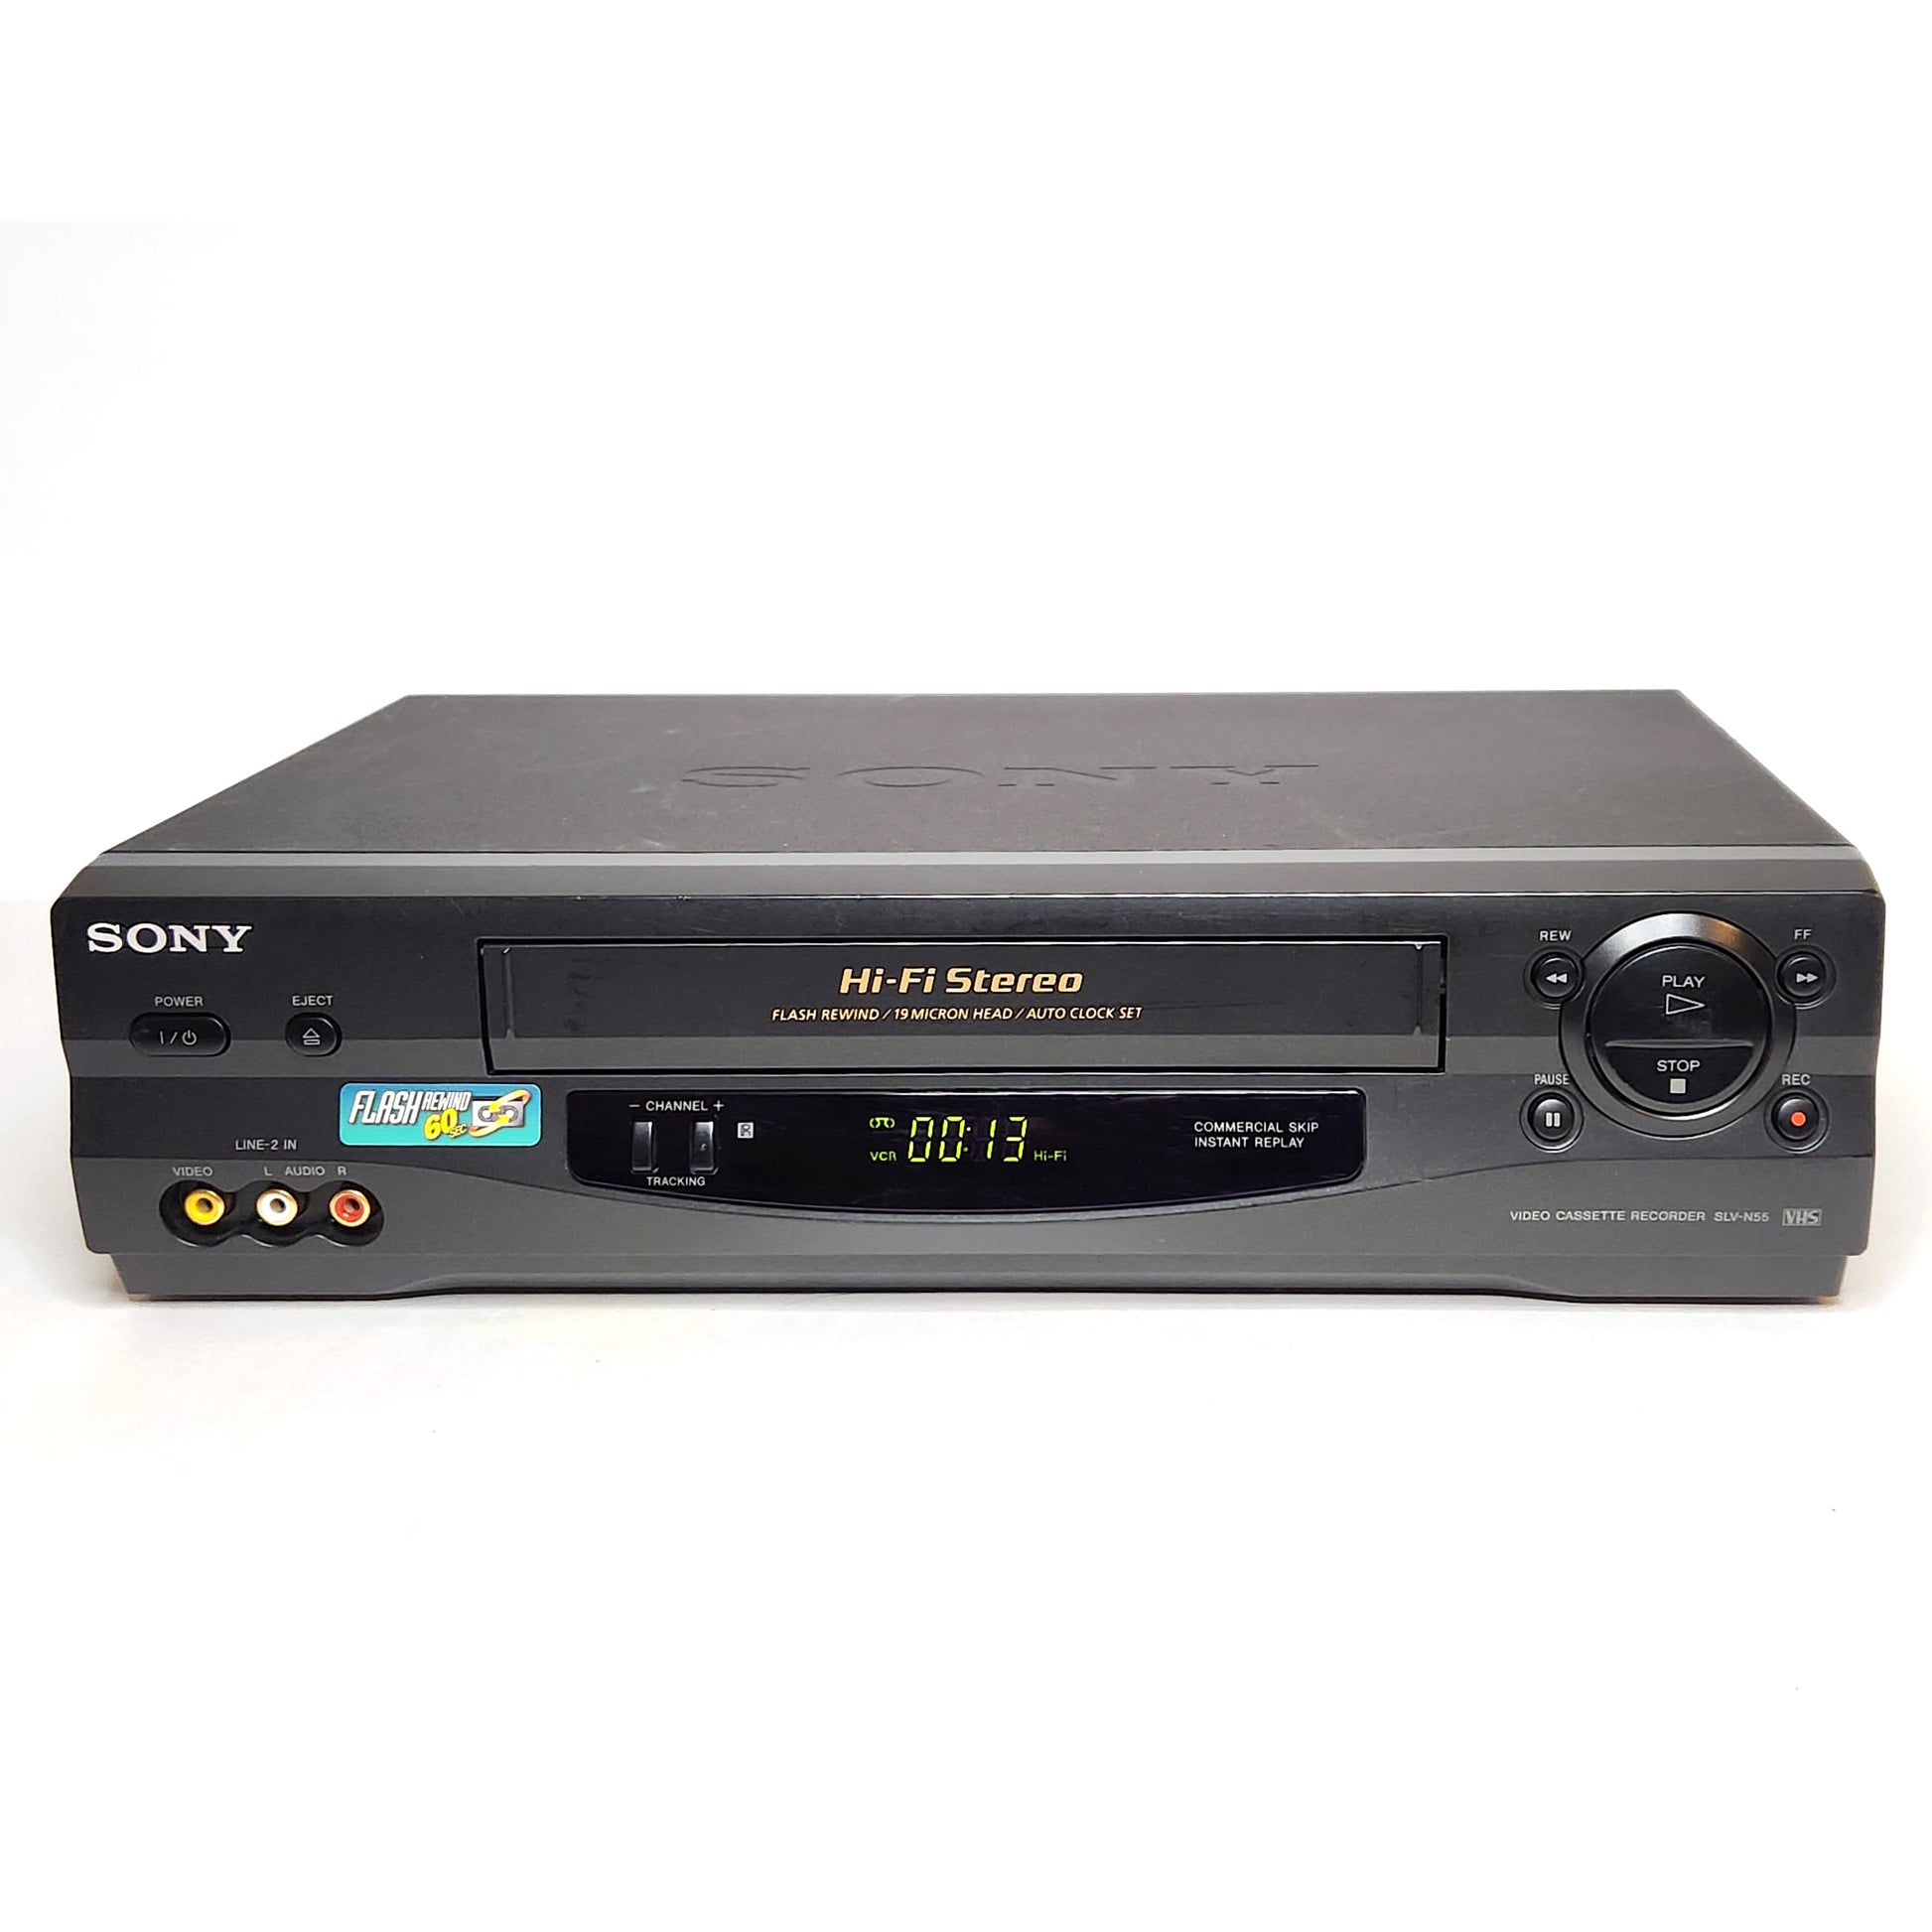 Sony SLV-N55 VCR, 4-Head Hi-Fi Stereo VHS Player Recorder#N# – VCR-DVD.com